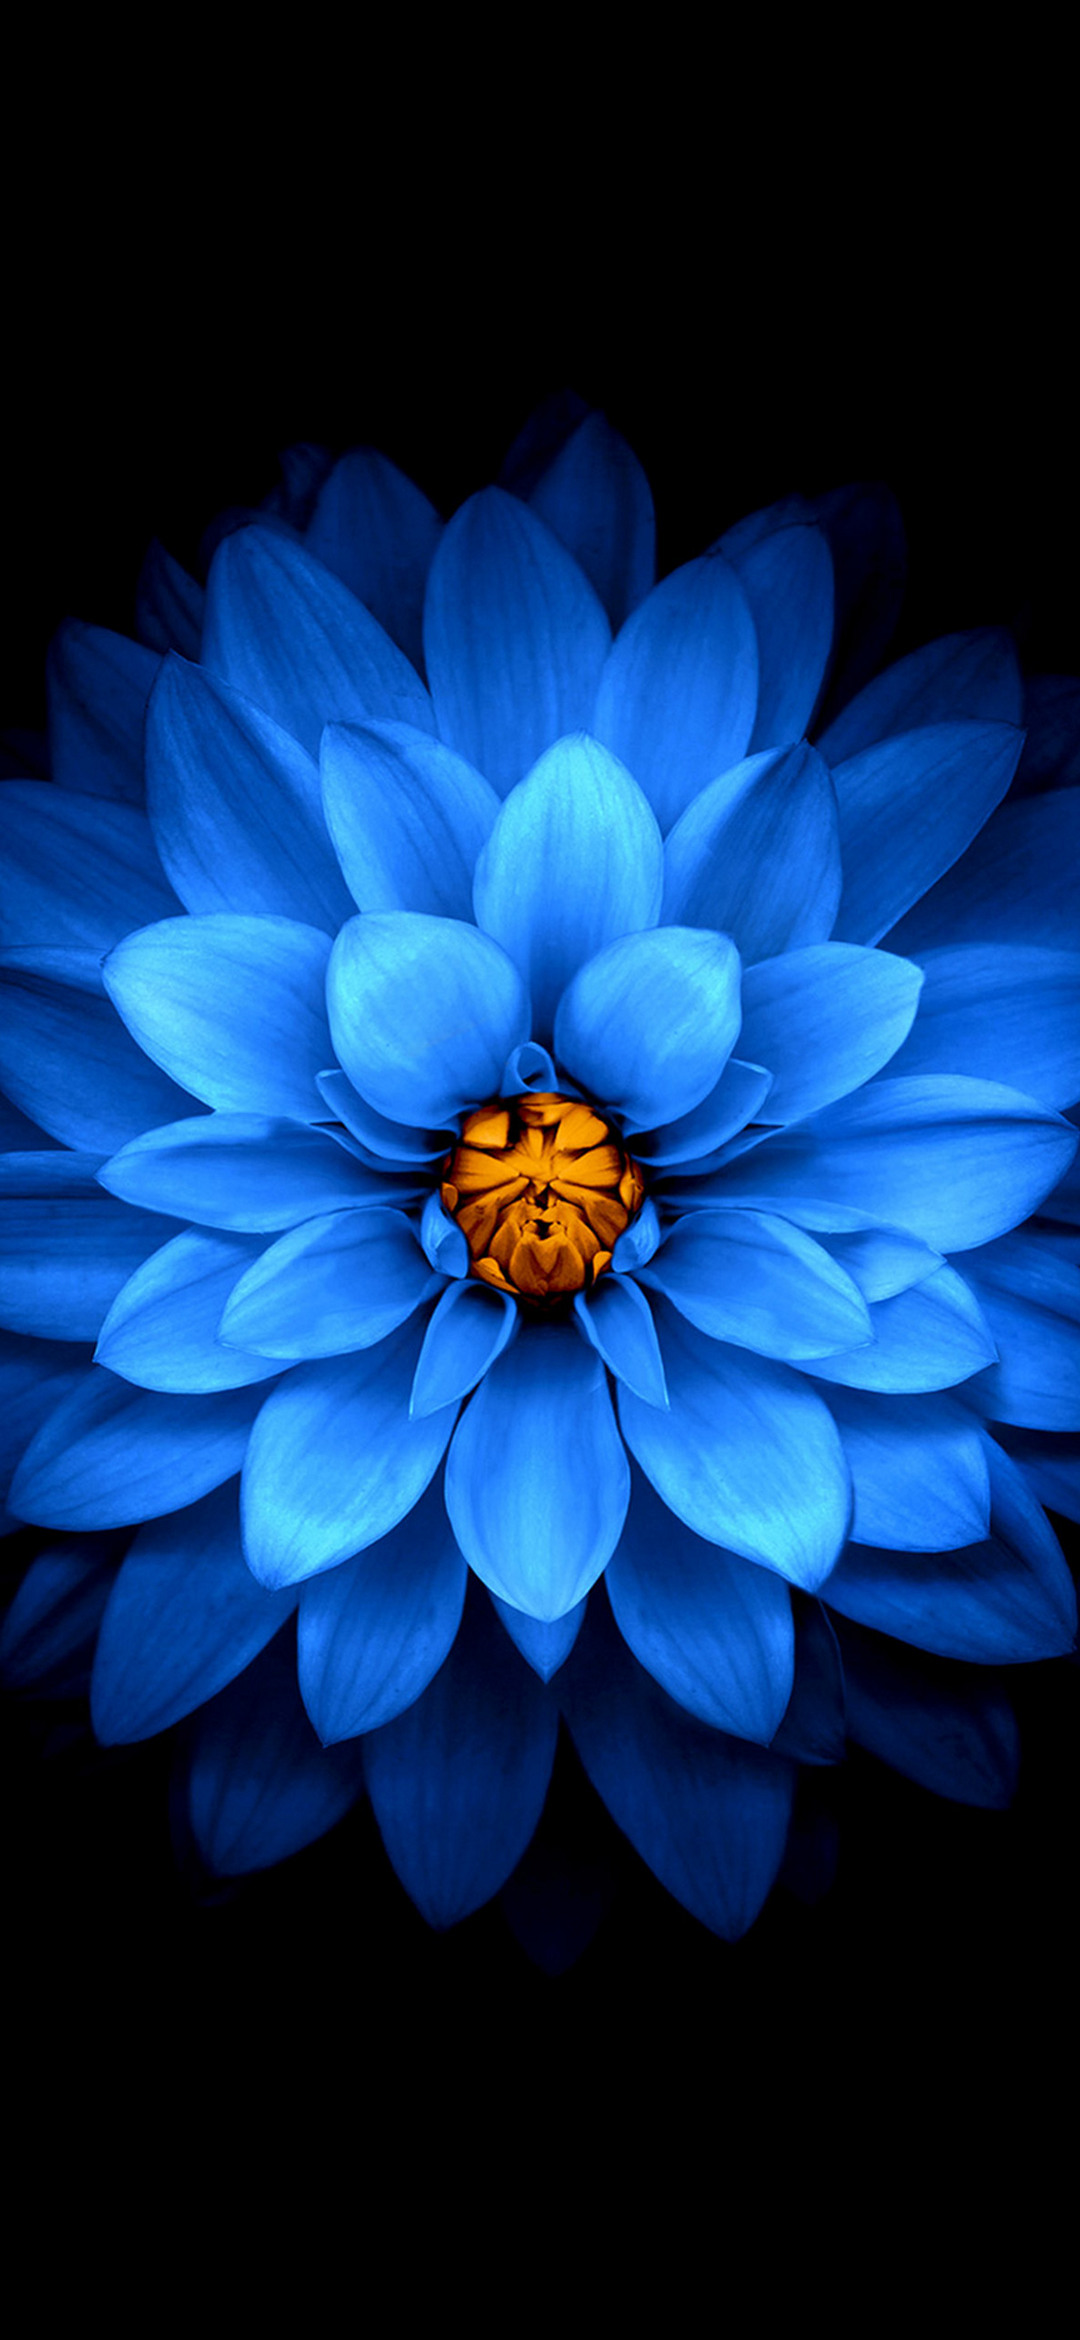 花びらの多い青い花 Find X Android 壁紙 待ち受け Sumaran